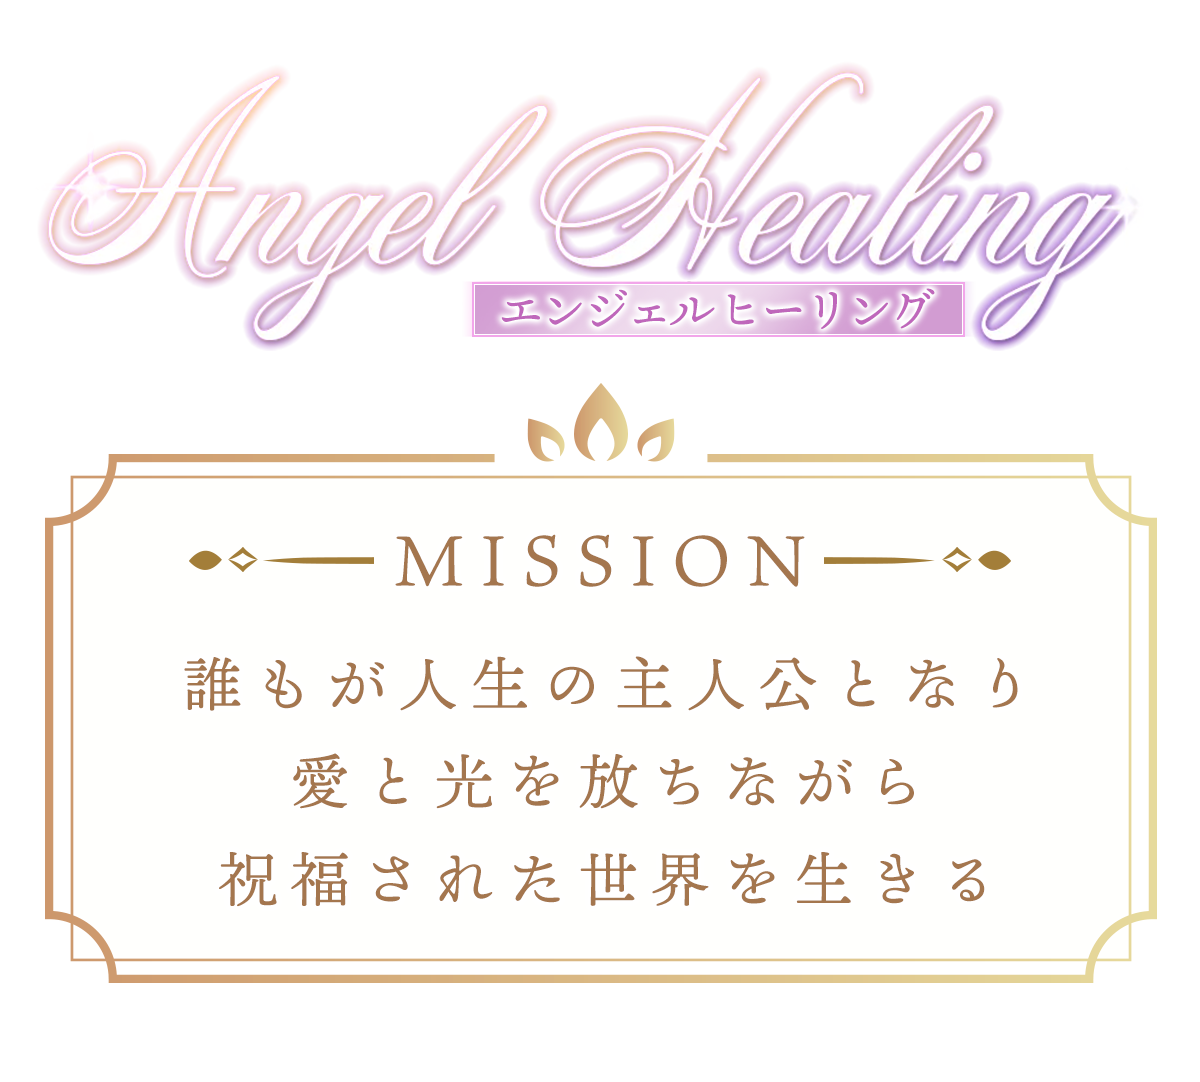 Angel Healing MISSION
〜『エンジェルヒーリング』ミッション〜
誰もが人生の主人公となり愛と光を放ちながら
祝福された世界を生きる